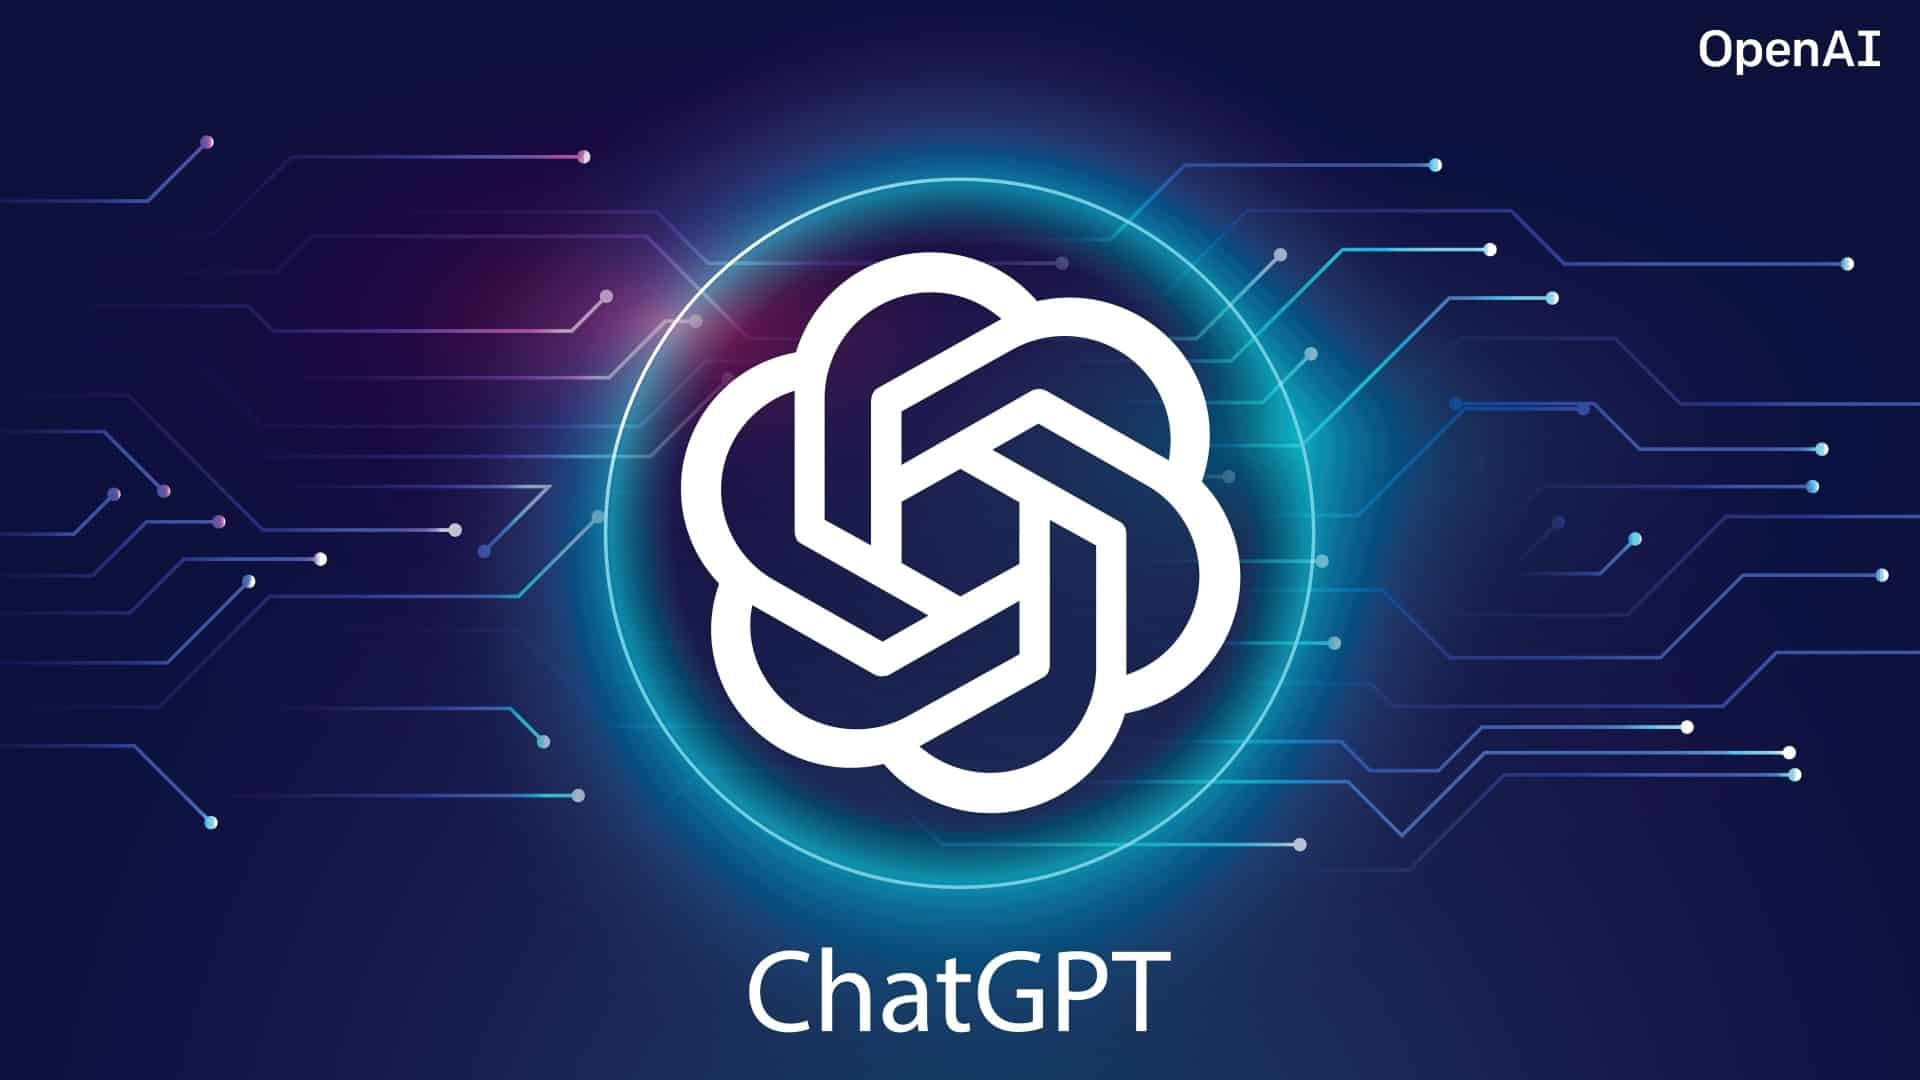 图片展示了一个带有“ChatGPT”字样的标志，背景是蓝色调的电路板图案，整体风格科技感十足。